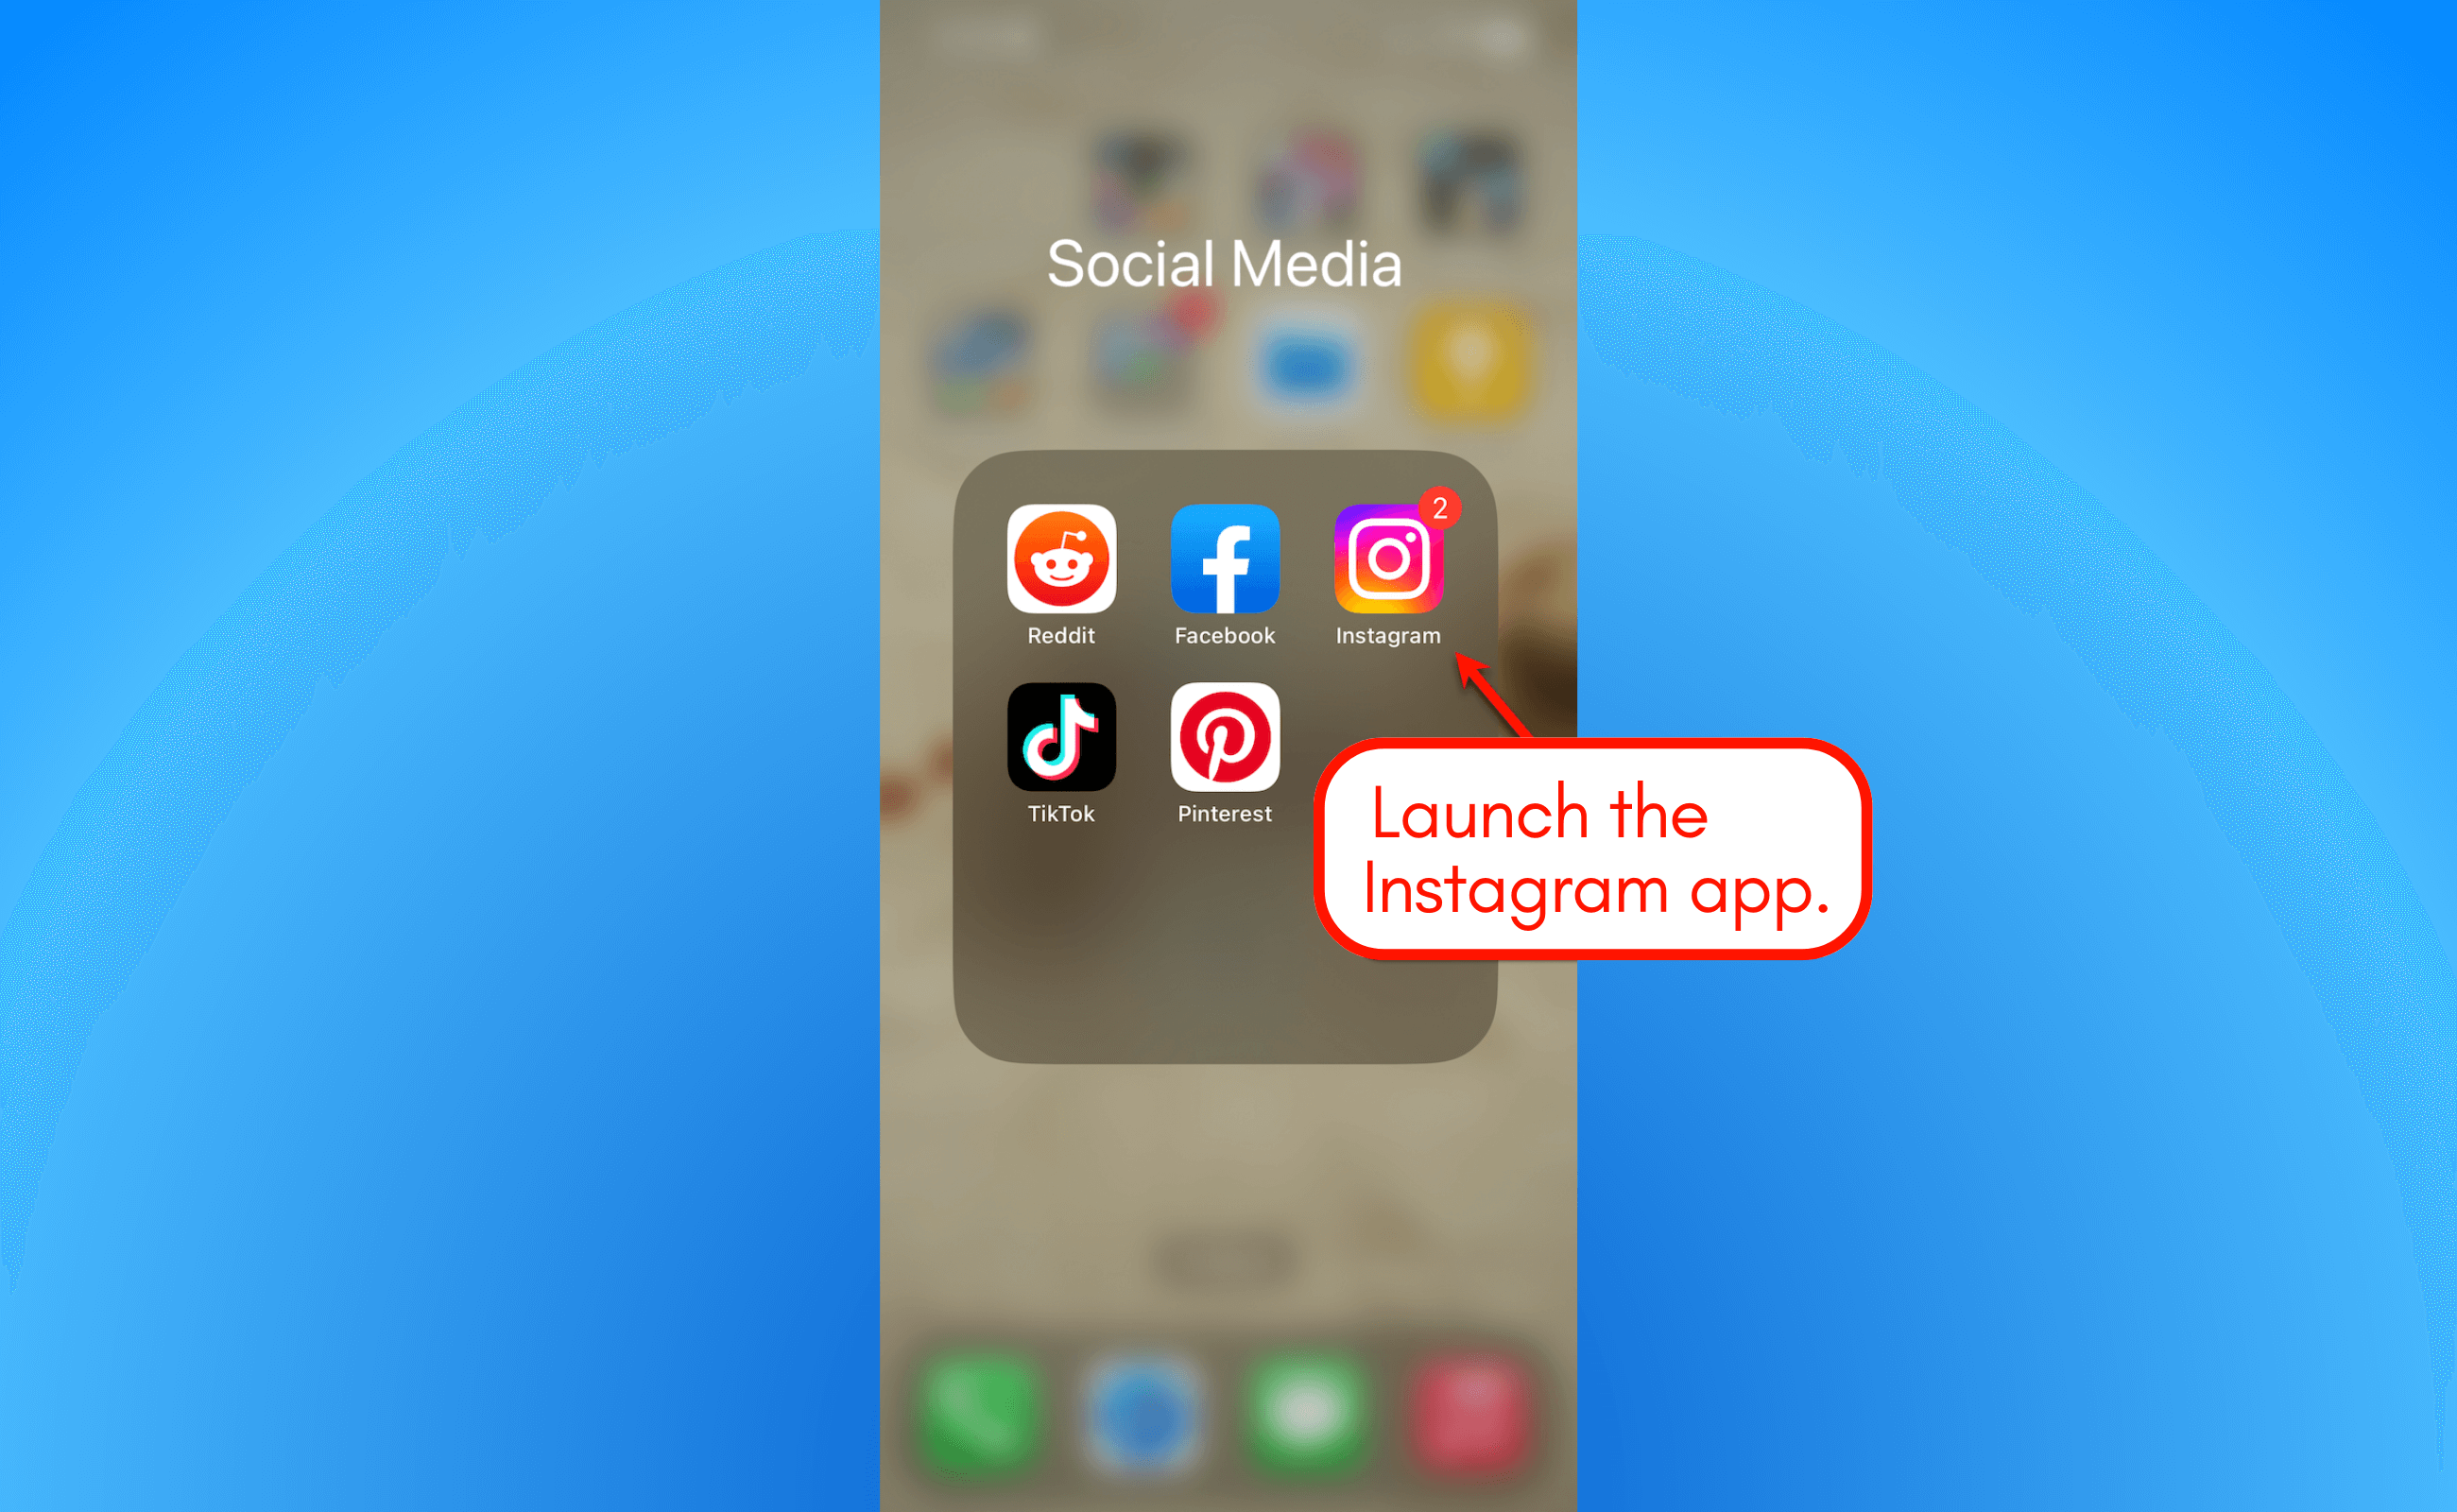 Launch the Instagram app